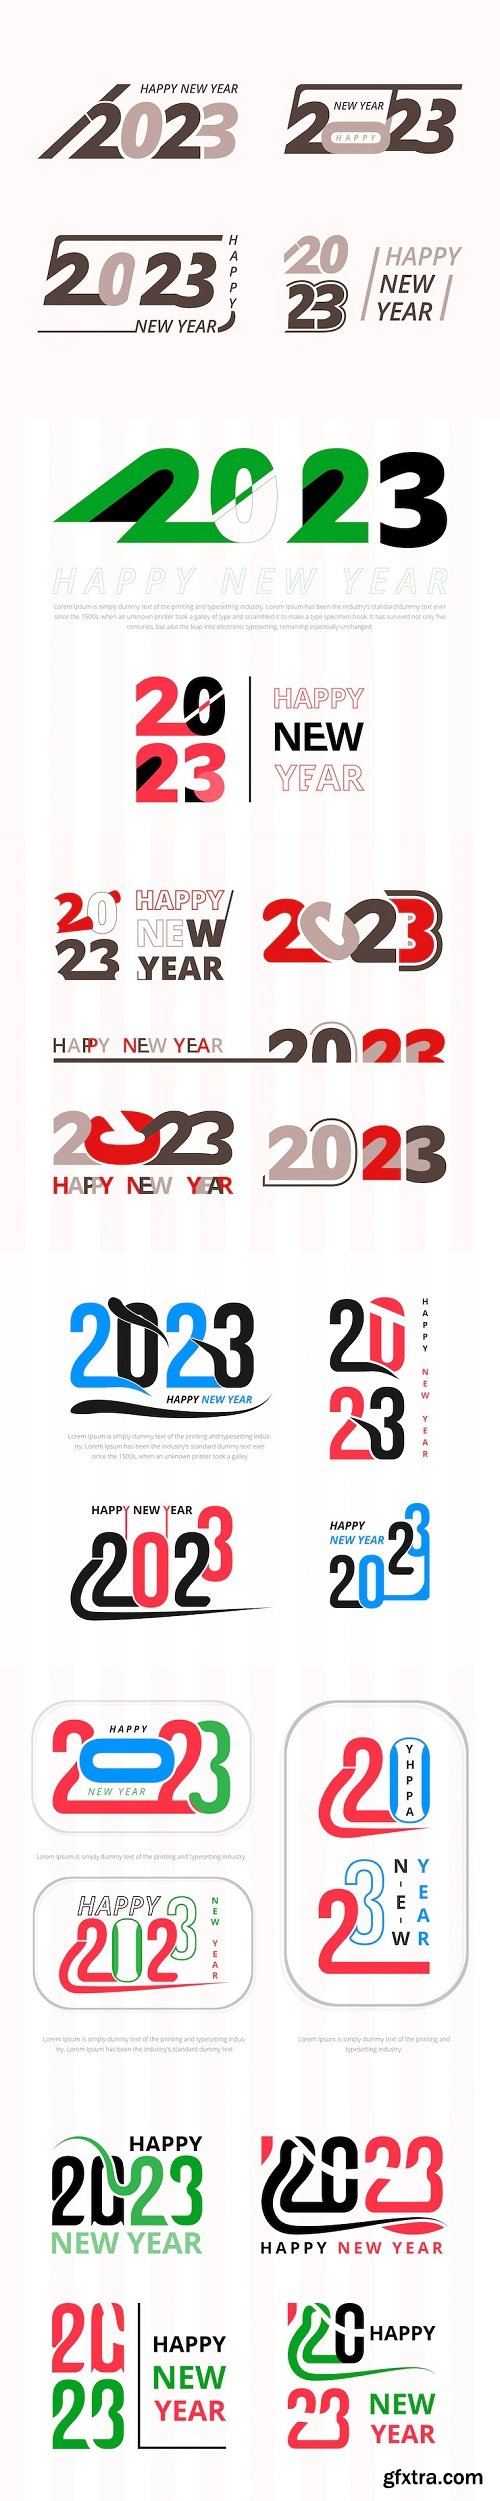 Happy new year 2023 typography